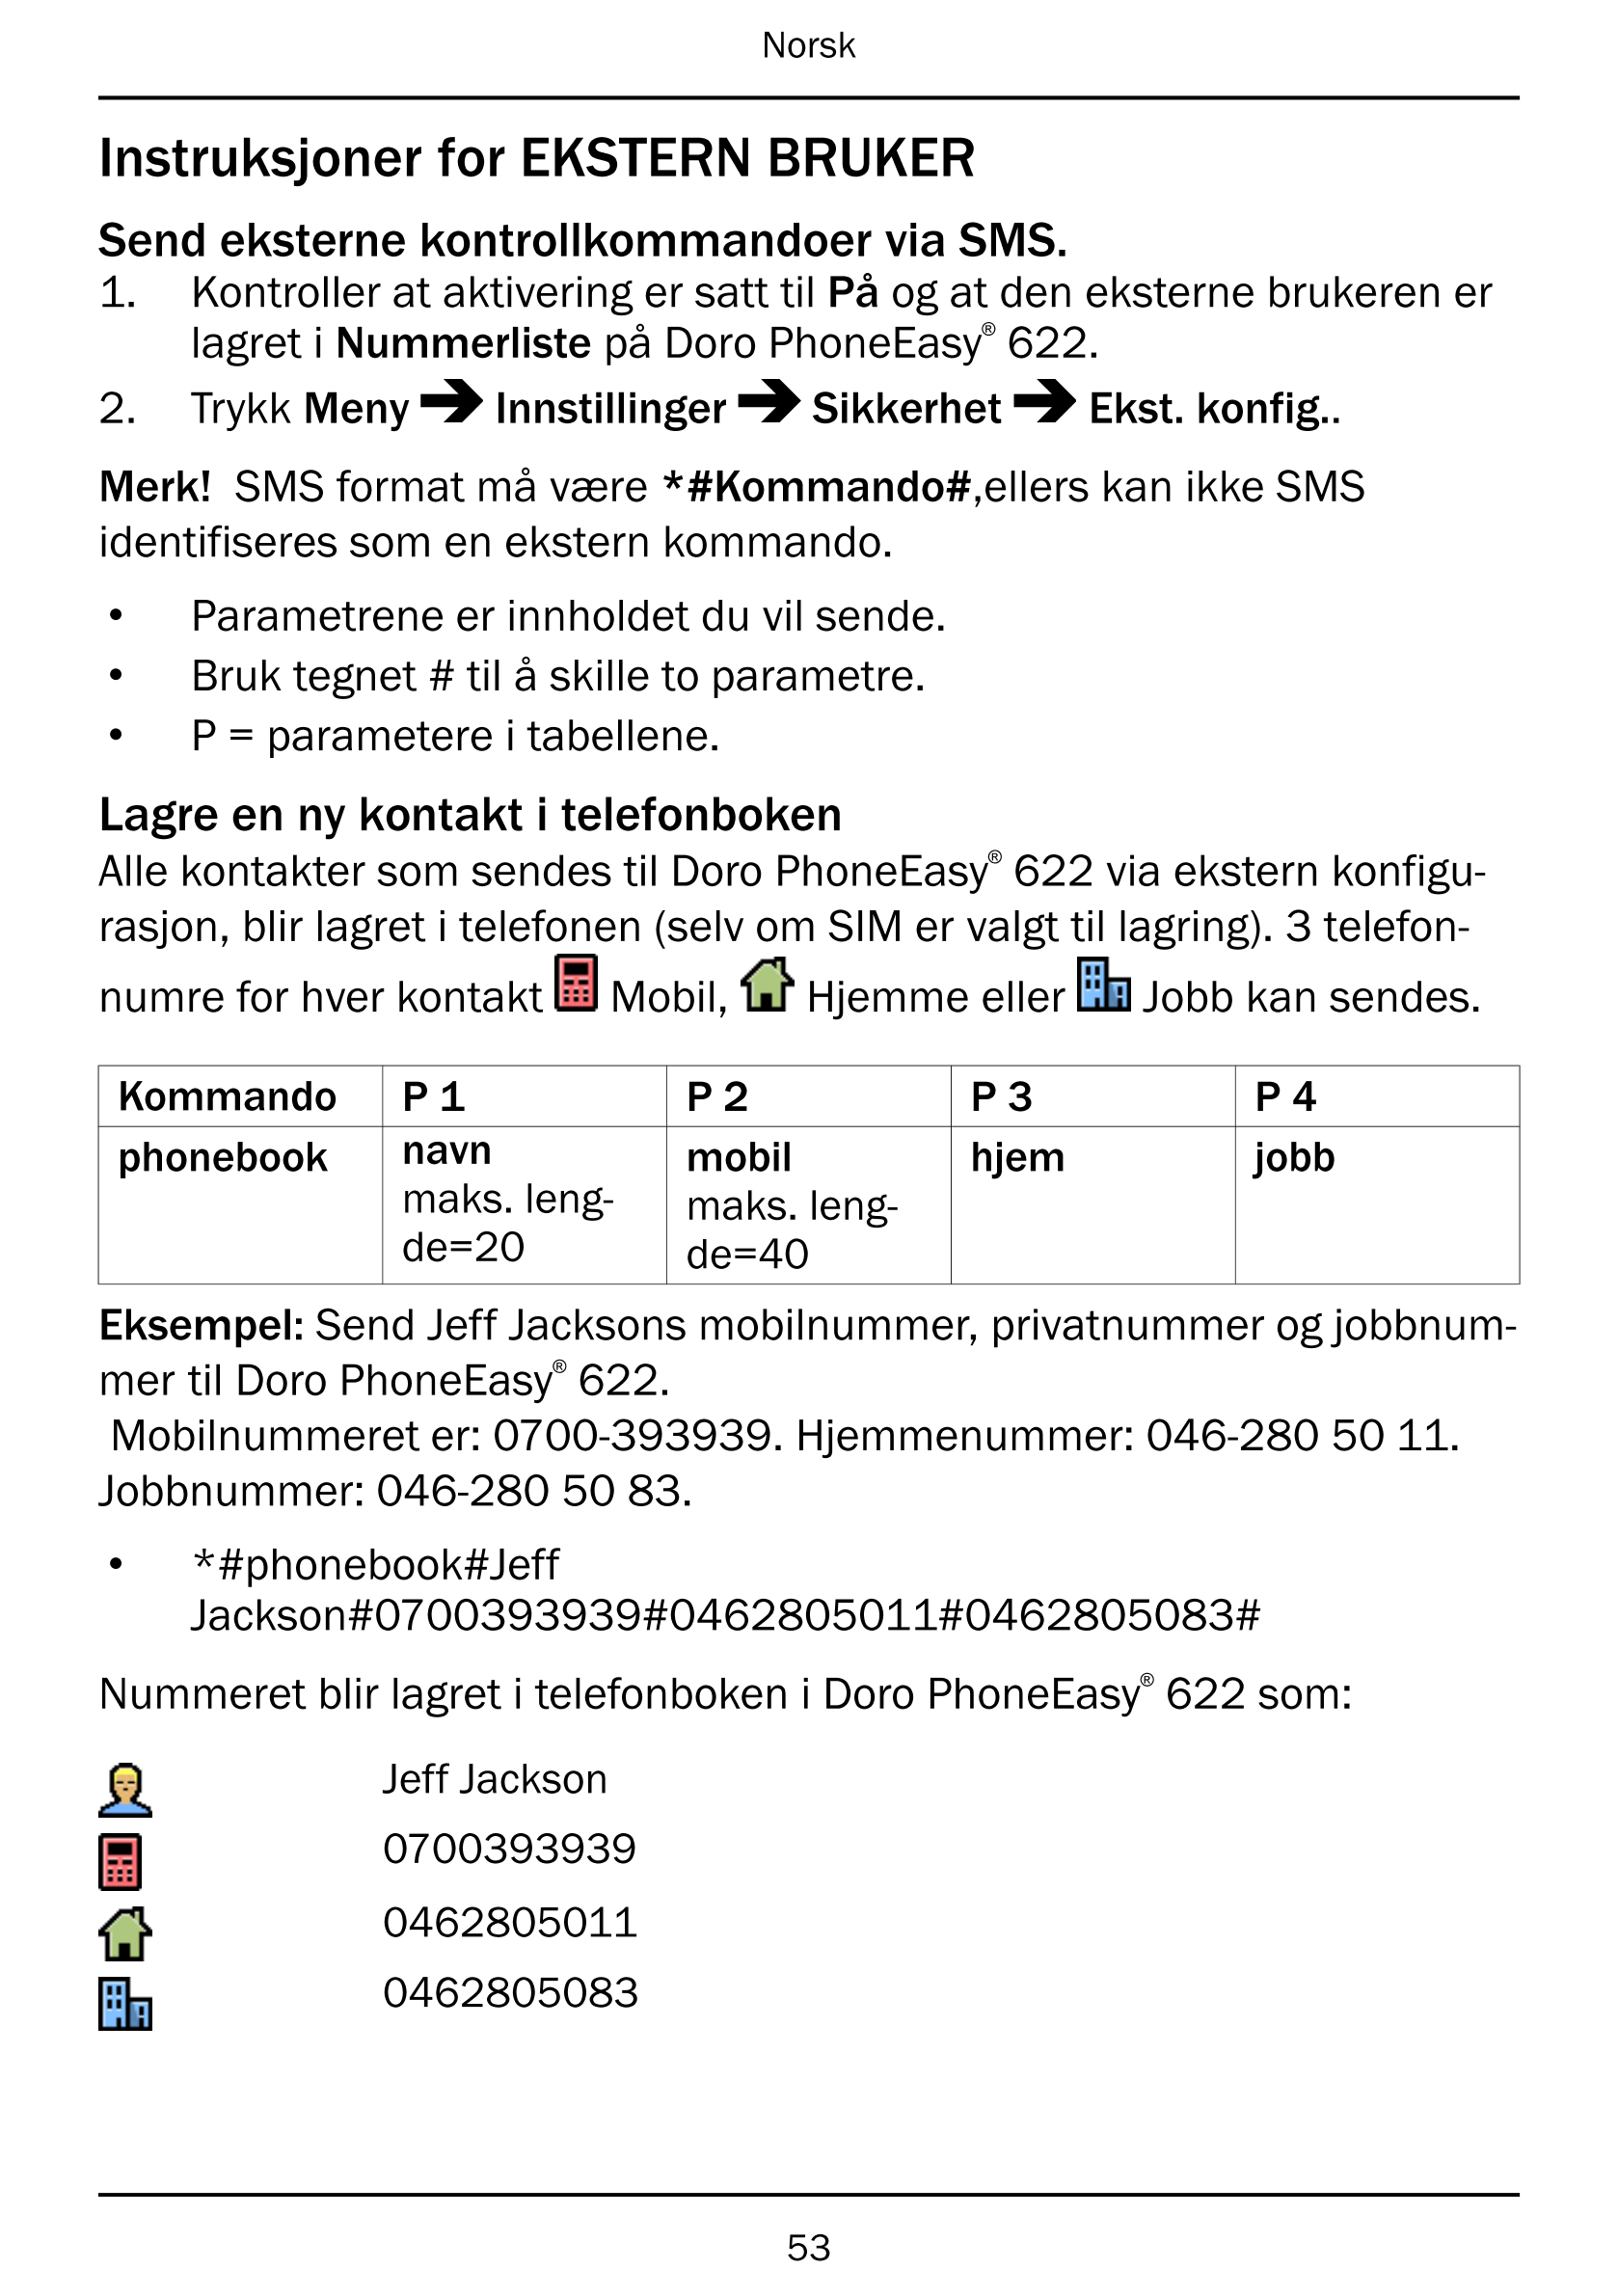 Norsk
Instruksjoner for EKSTERN BRUKER
Send eksterne kontrollkommandoer via SMS.
1.     Kontroller at aktivering er satt til På 